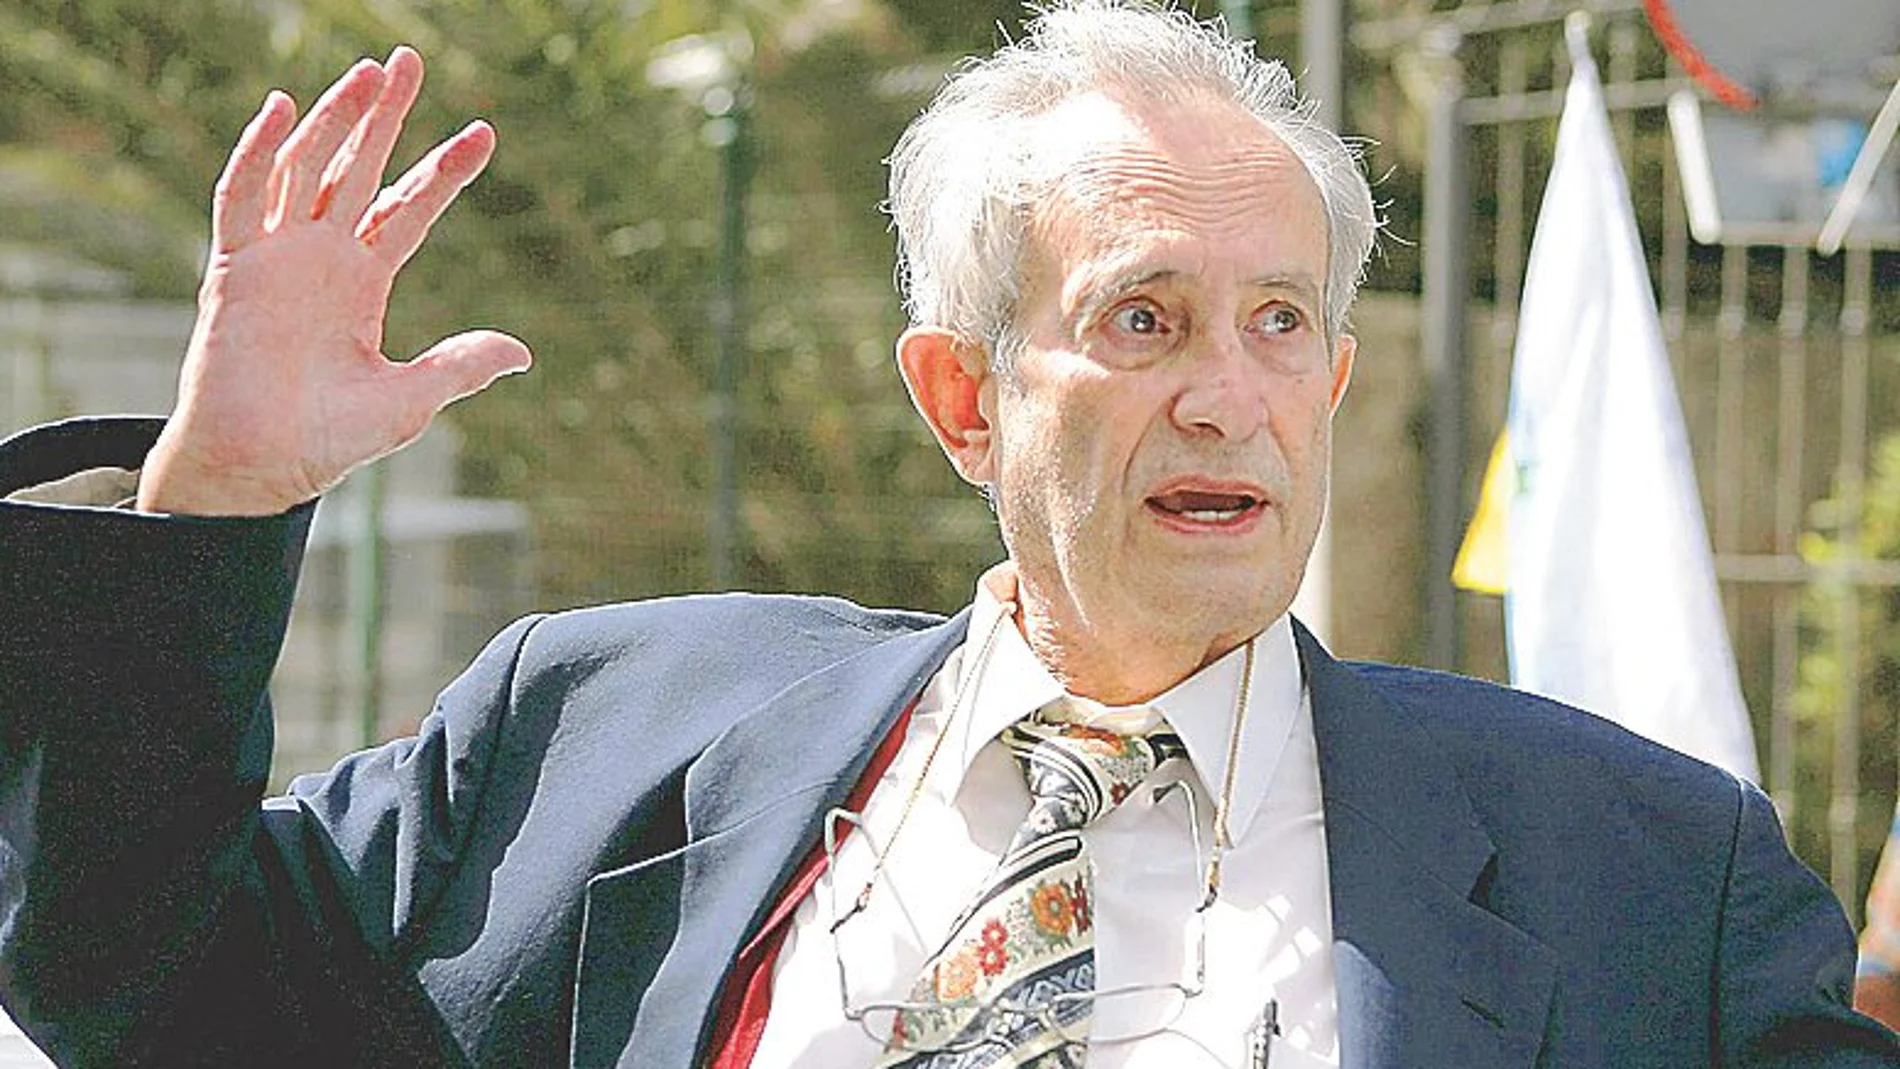 Cubillo falleció el 10 de diciembre pasado en Tenerife a los 82 años